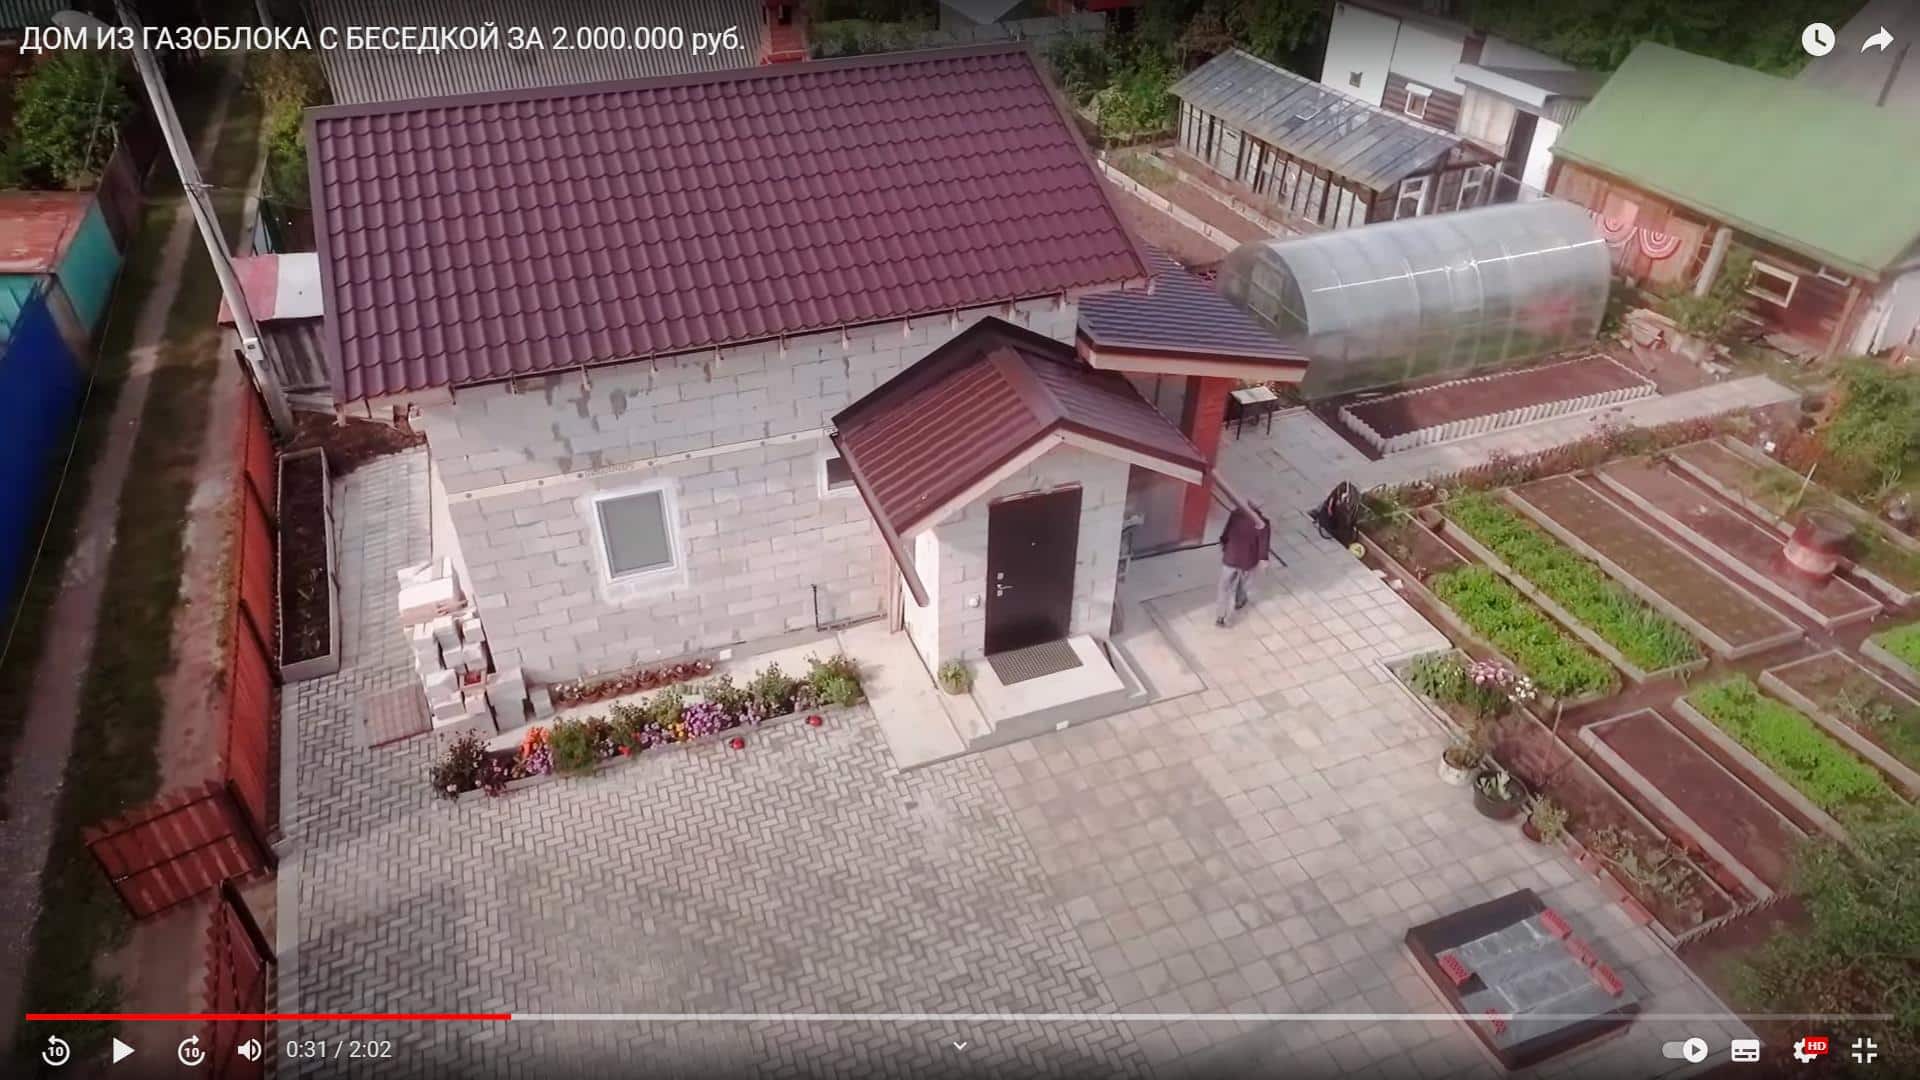 Строительство дома из газоблока с беседкой в Перми за 2000000 рублей